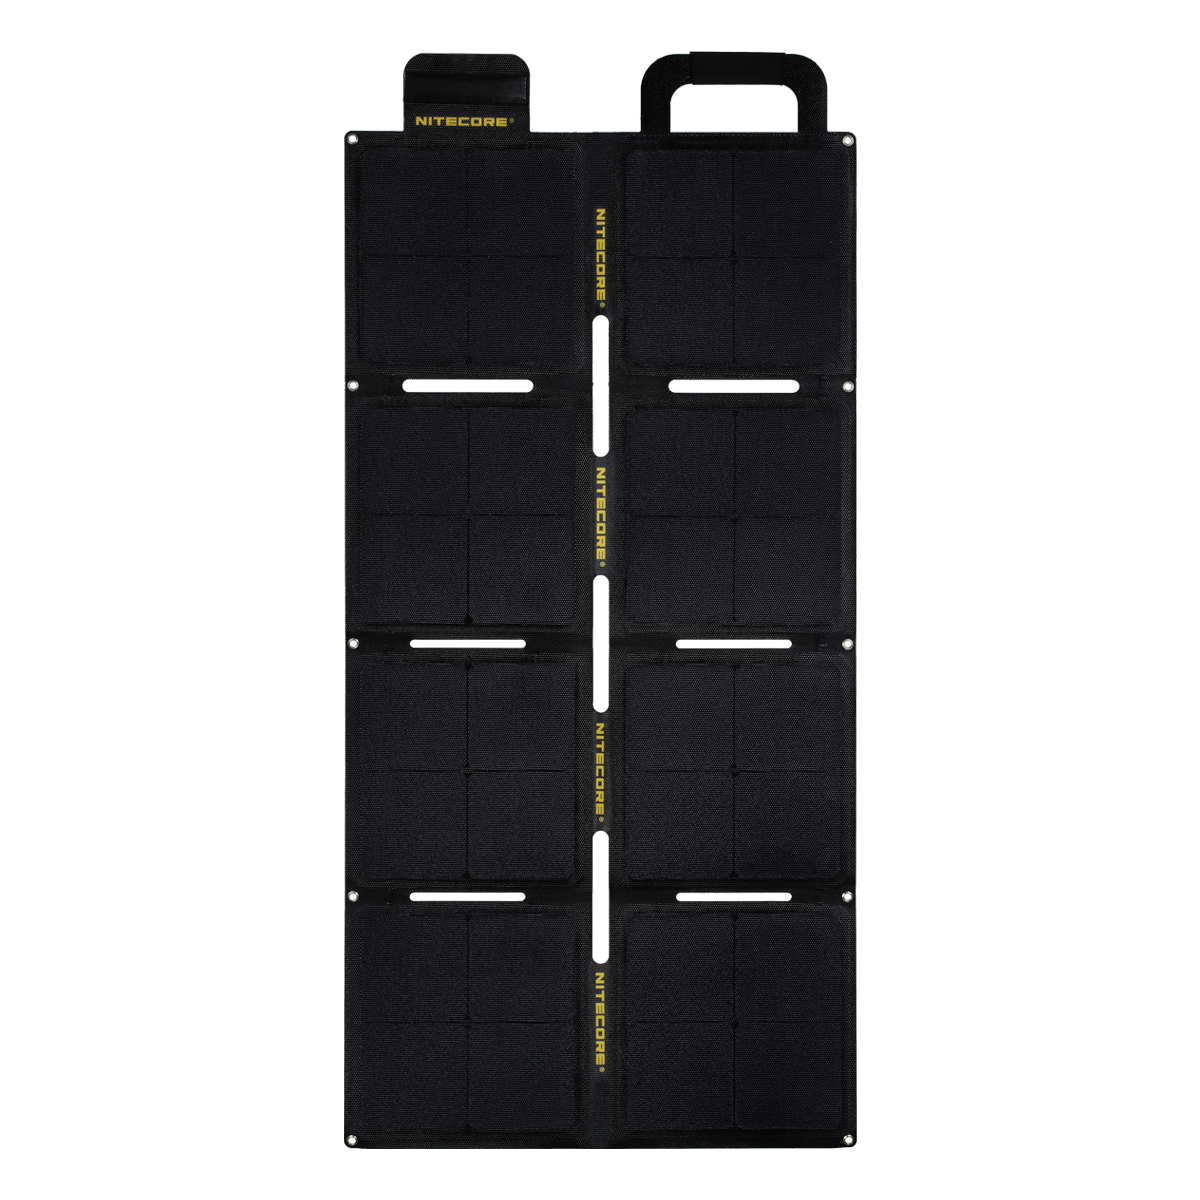 Panneau solaire pliable NITECORE FSP100W ETFE de 100 W avec étanchéité IPX5, sortie de 5,6 A et 18 V pour les dispositifs à cellules solaires d'énergie solaire en camping et en voyage.